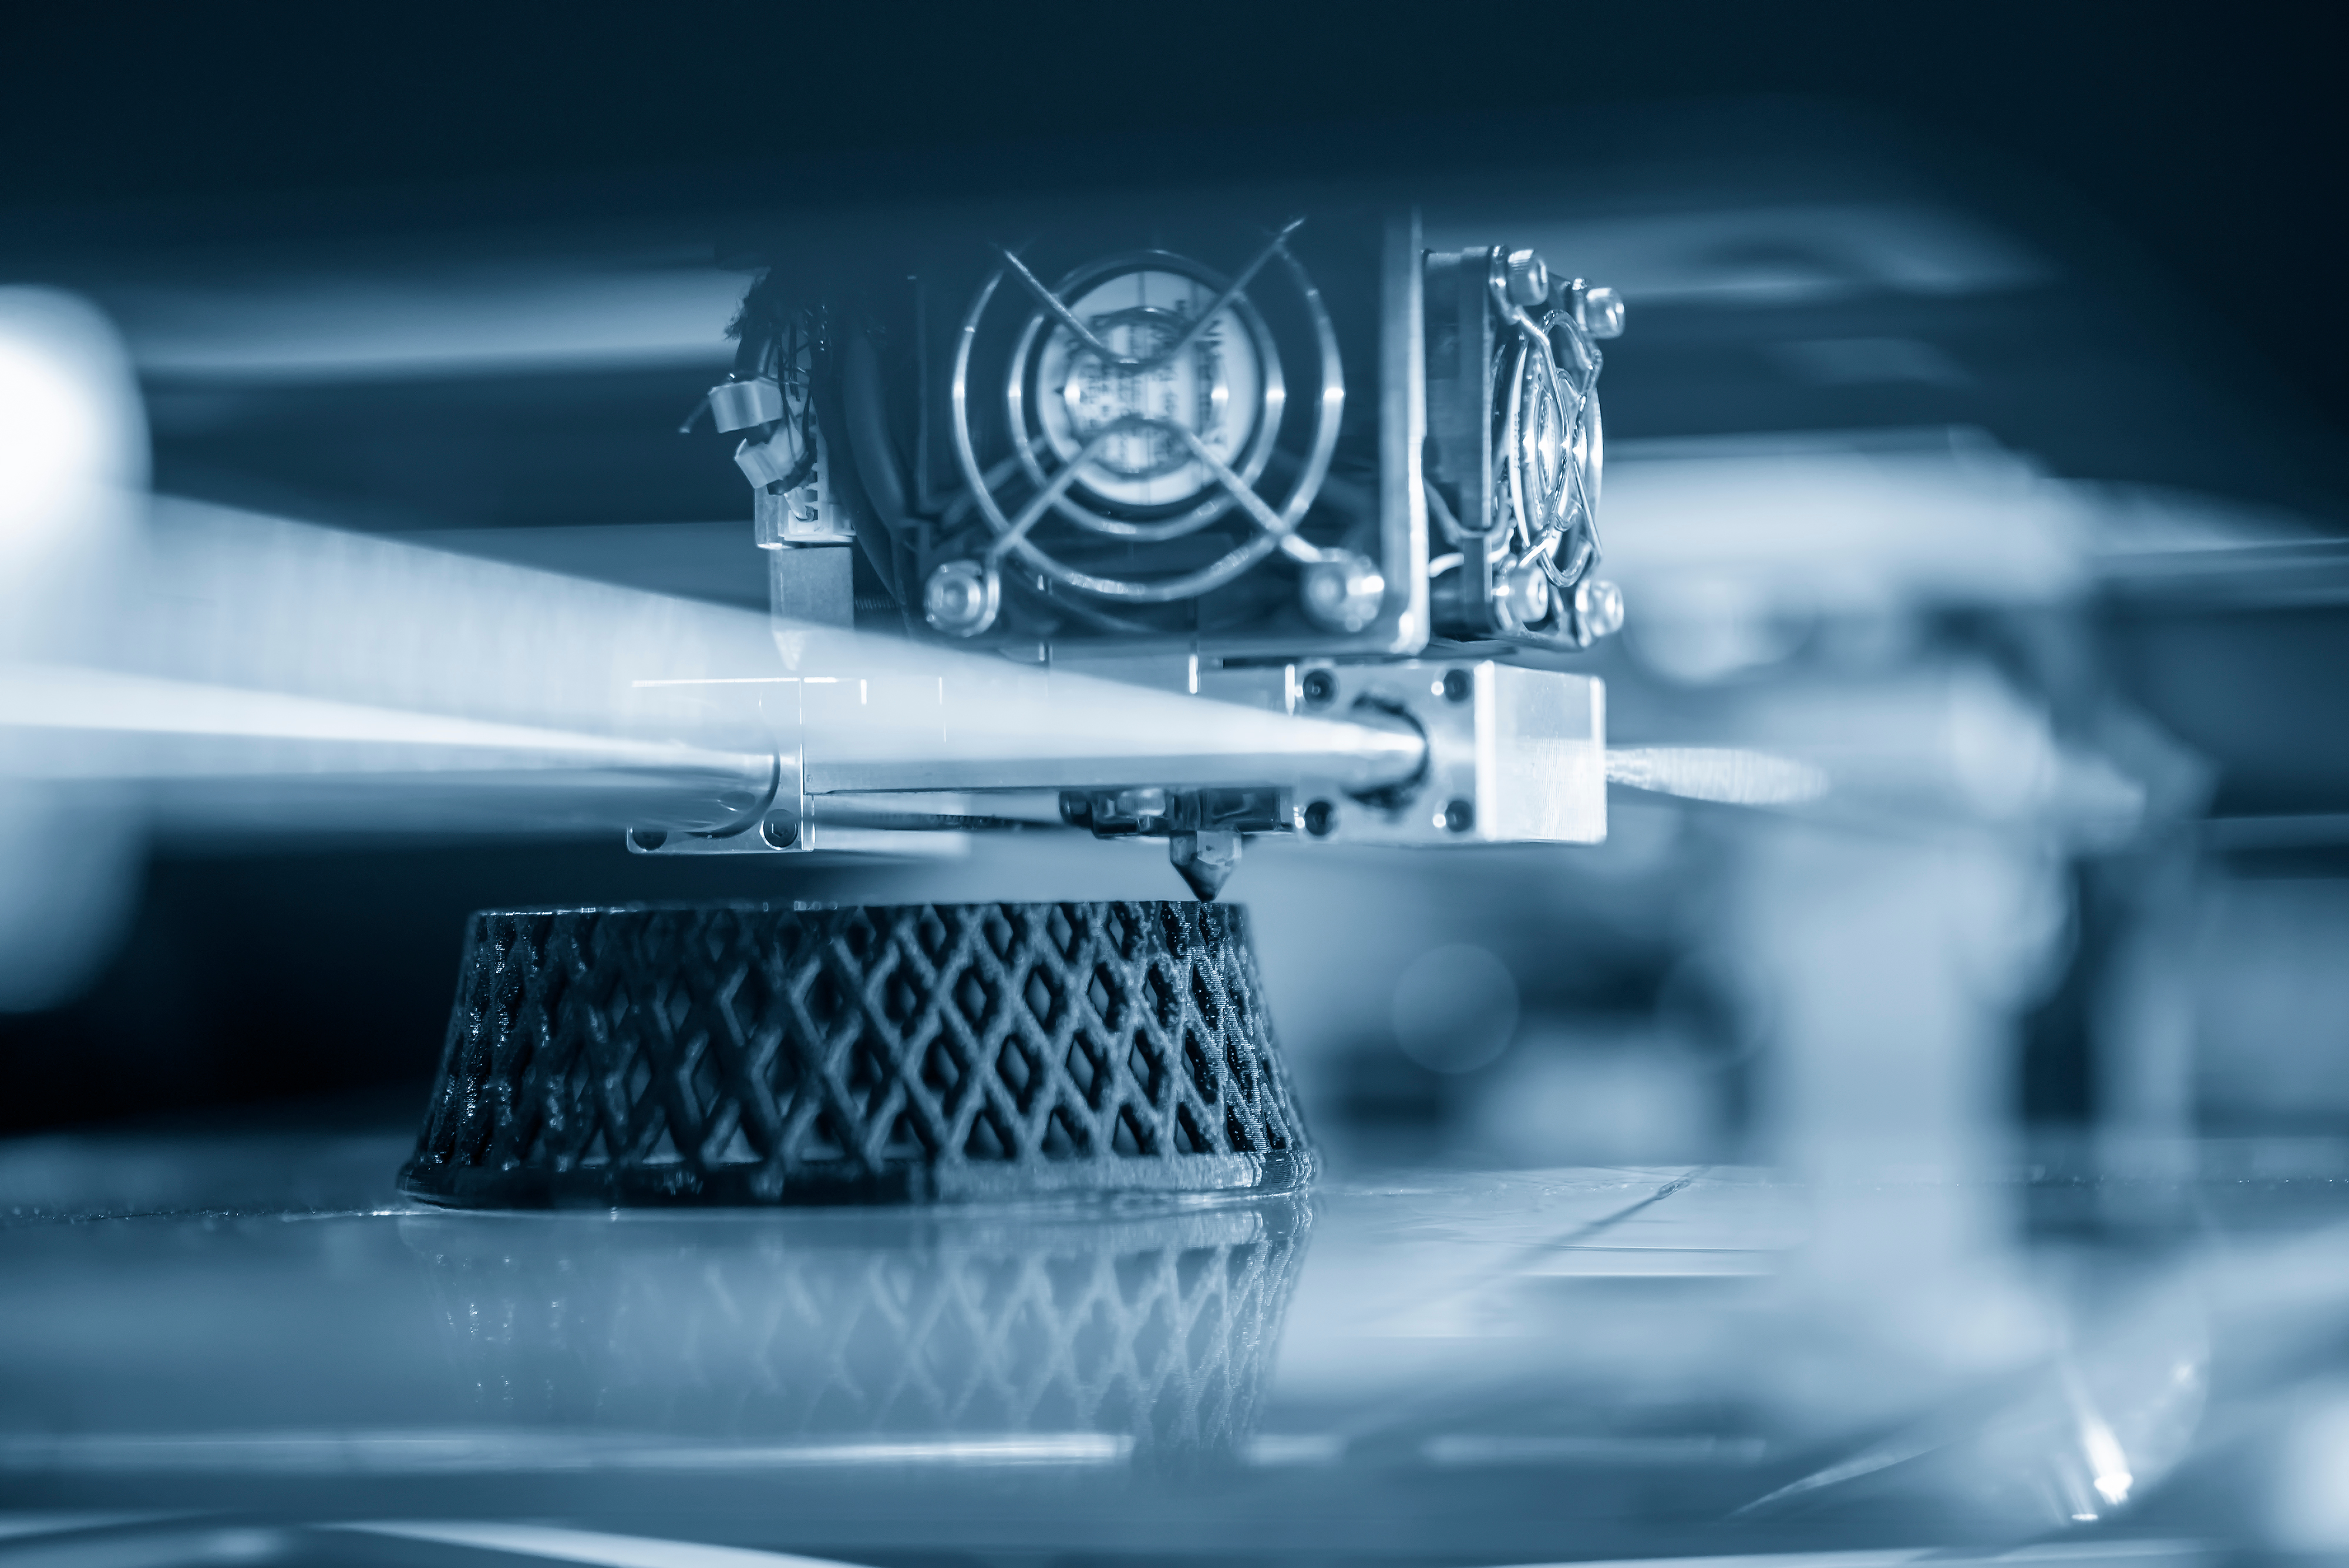 La fabricación aditiva implica una nueva forma de producir mediante la transformación digital del sector industrial. / Shutterstock